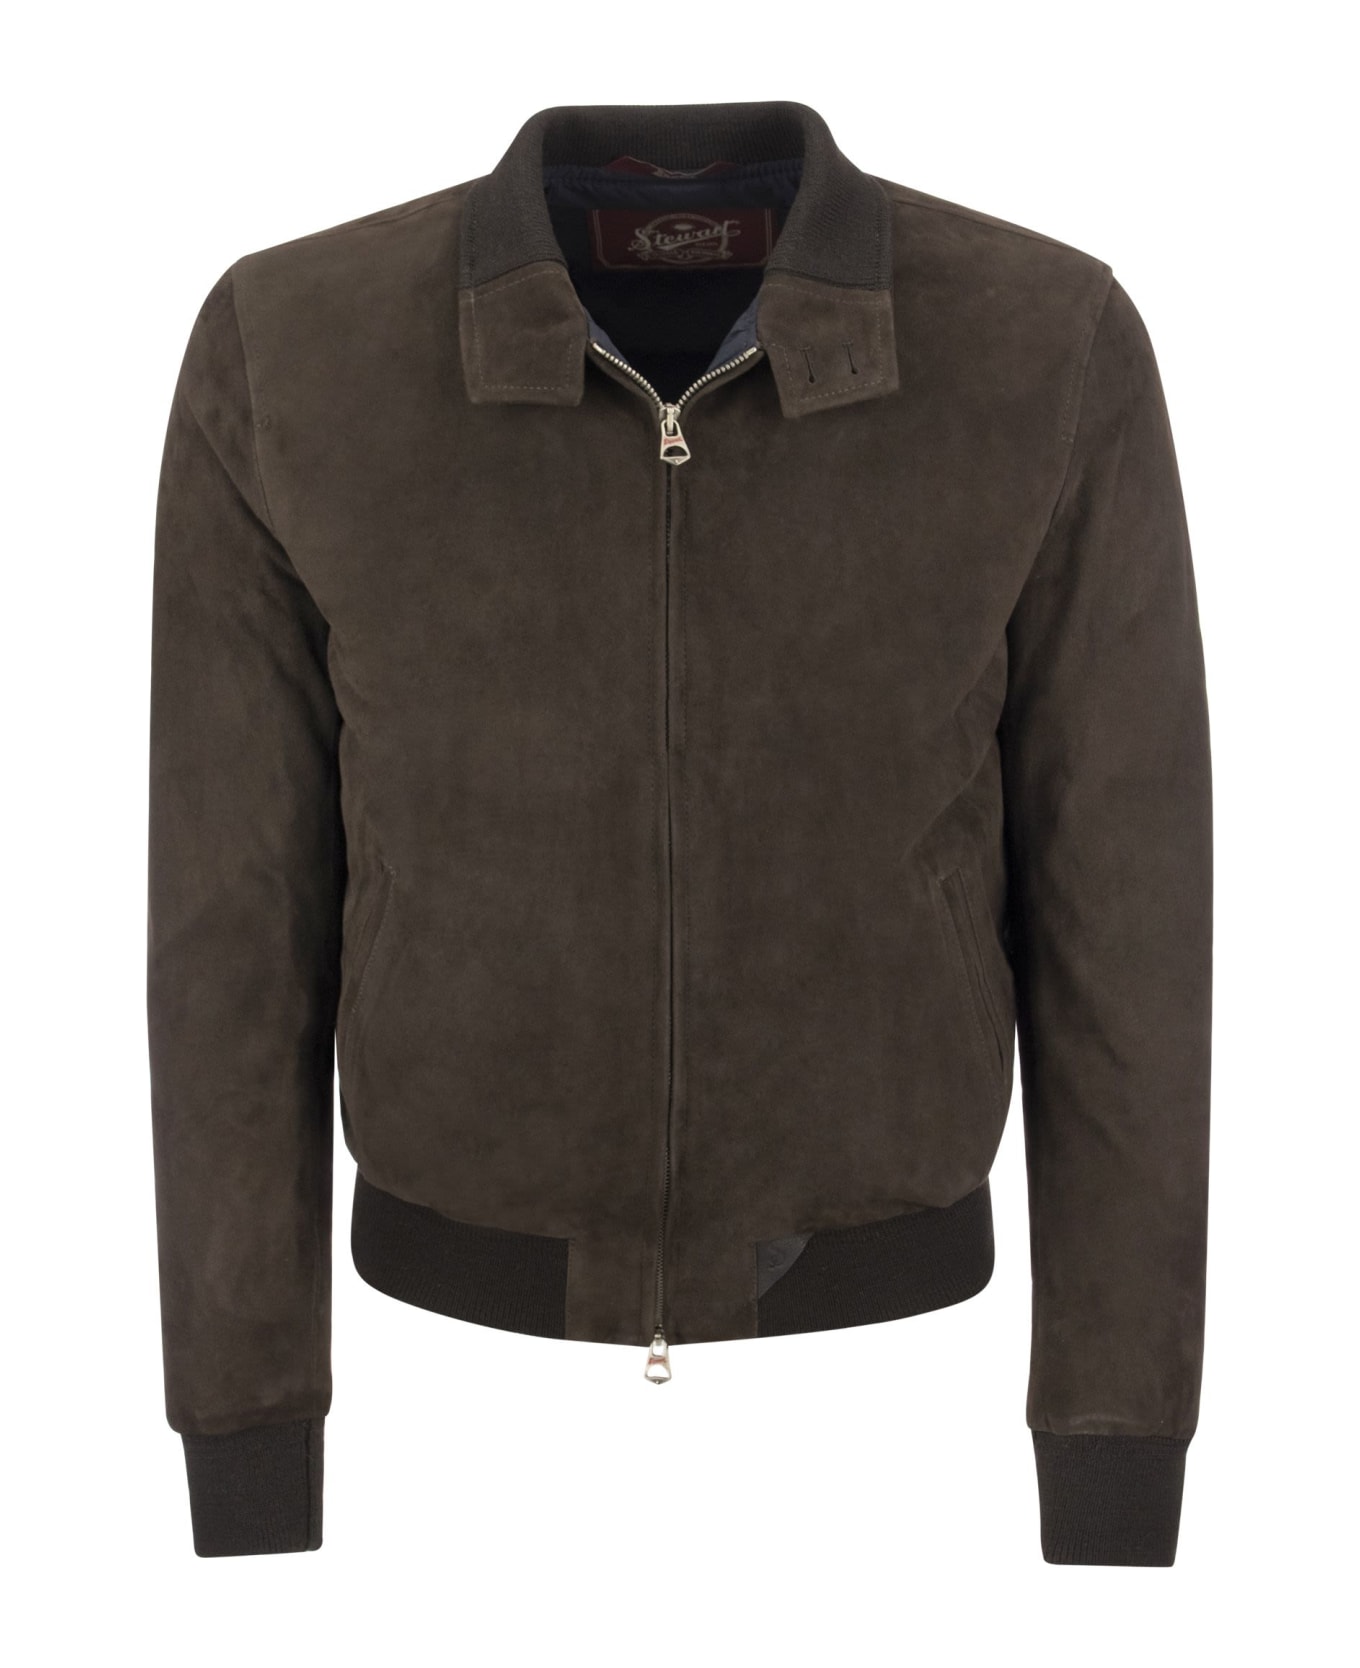 Stewart Suede Leather Jacket - Brown ジャケット